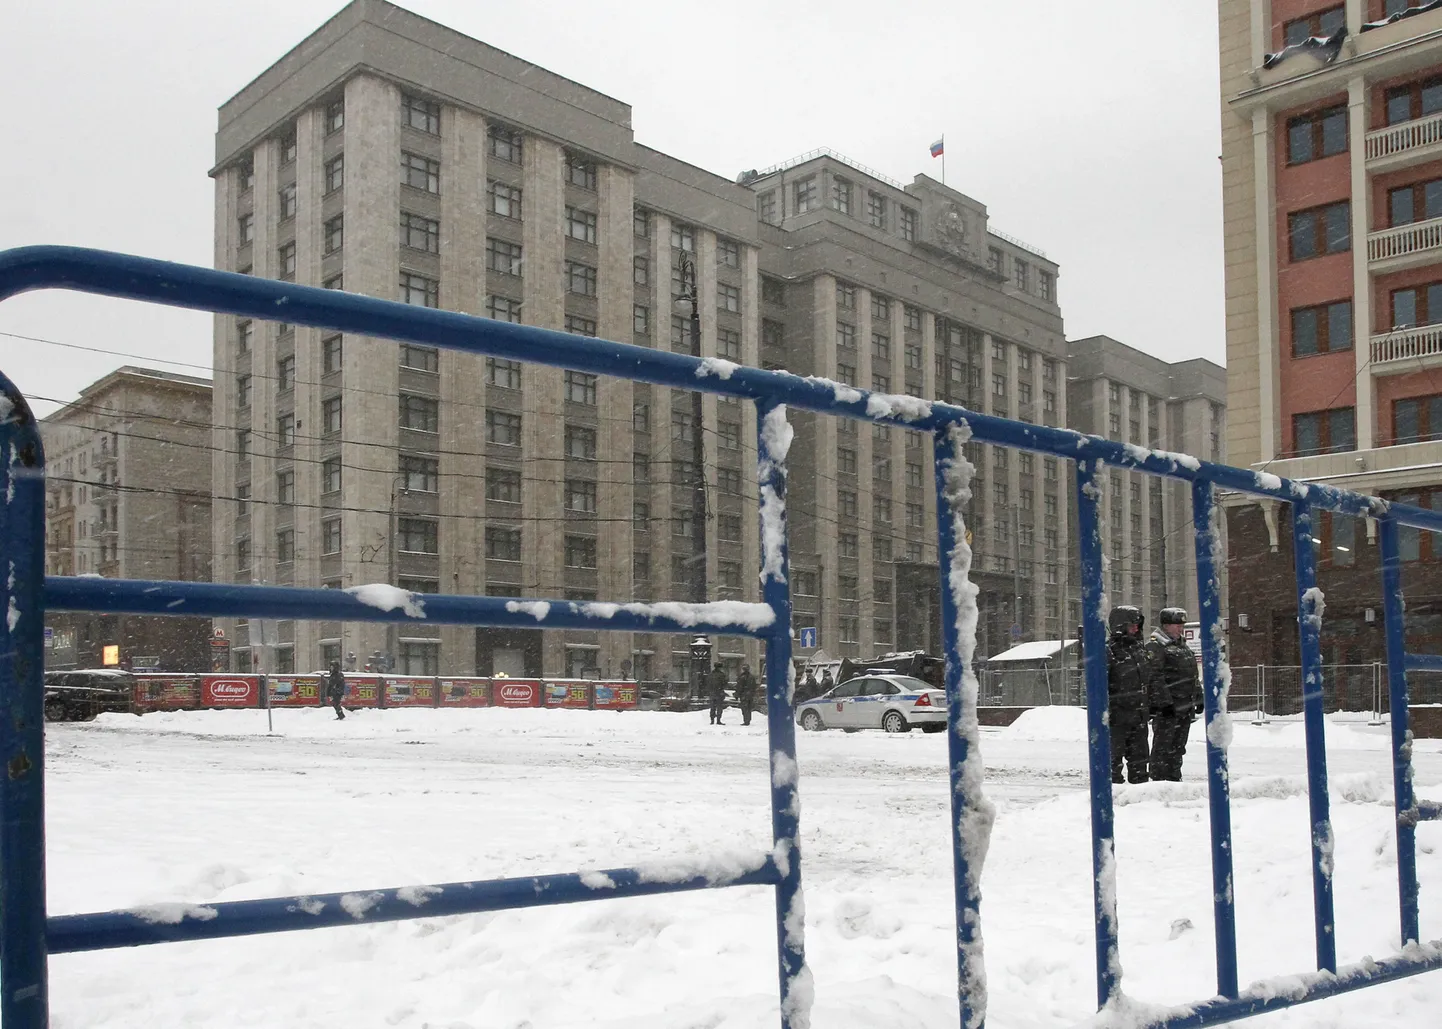 Moskvas asuv riigiduuma hoone.